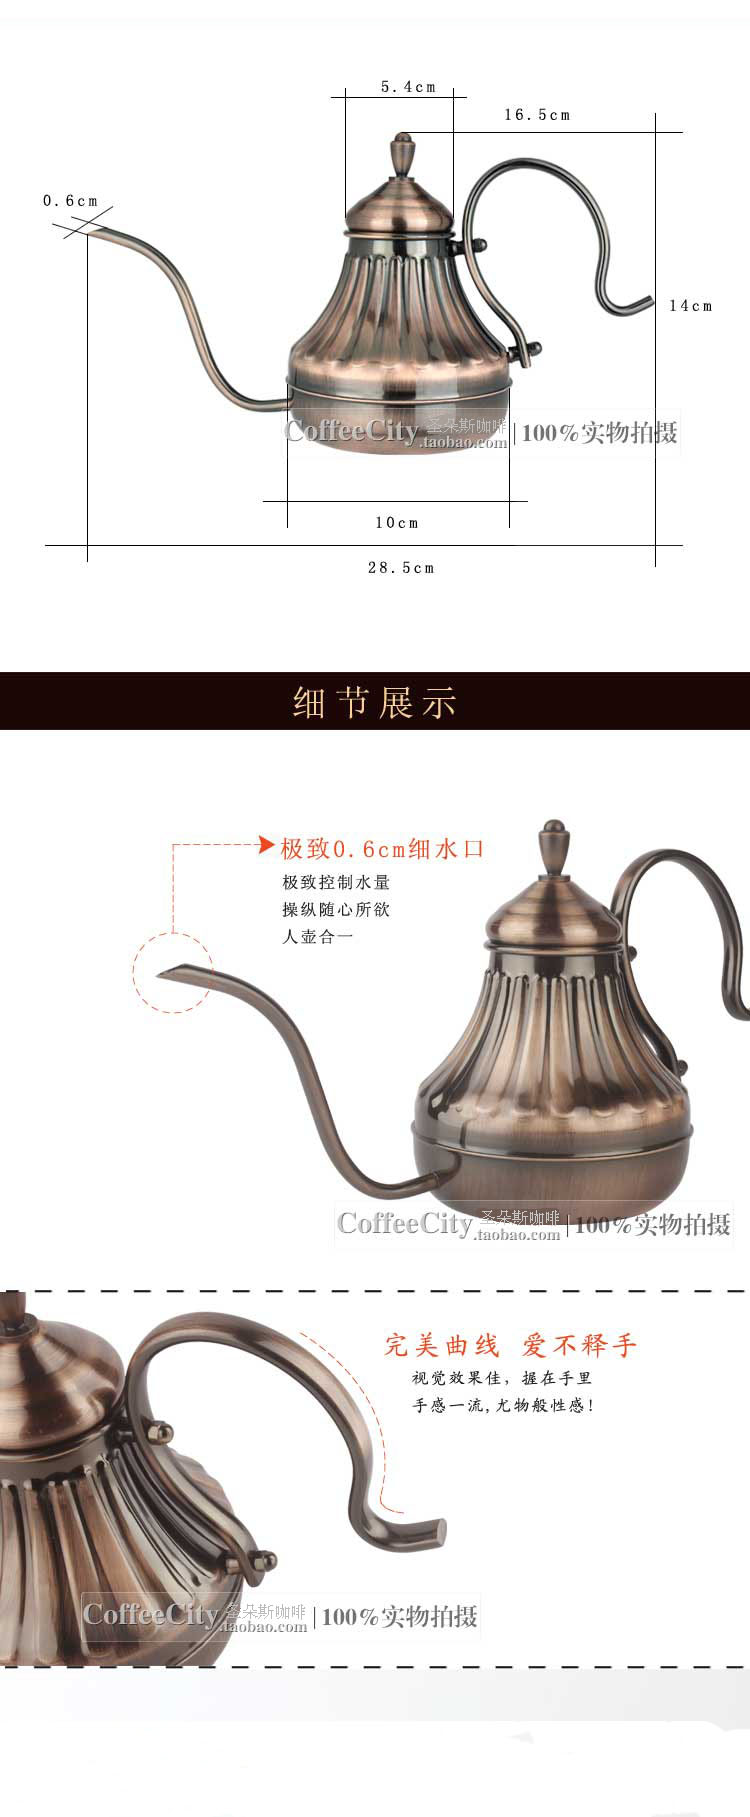 咖啡手冲壶古铜色宫廷不锈钢细口壶厂家提供 玫瑰金图片三